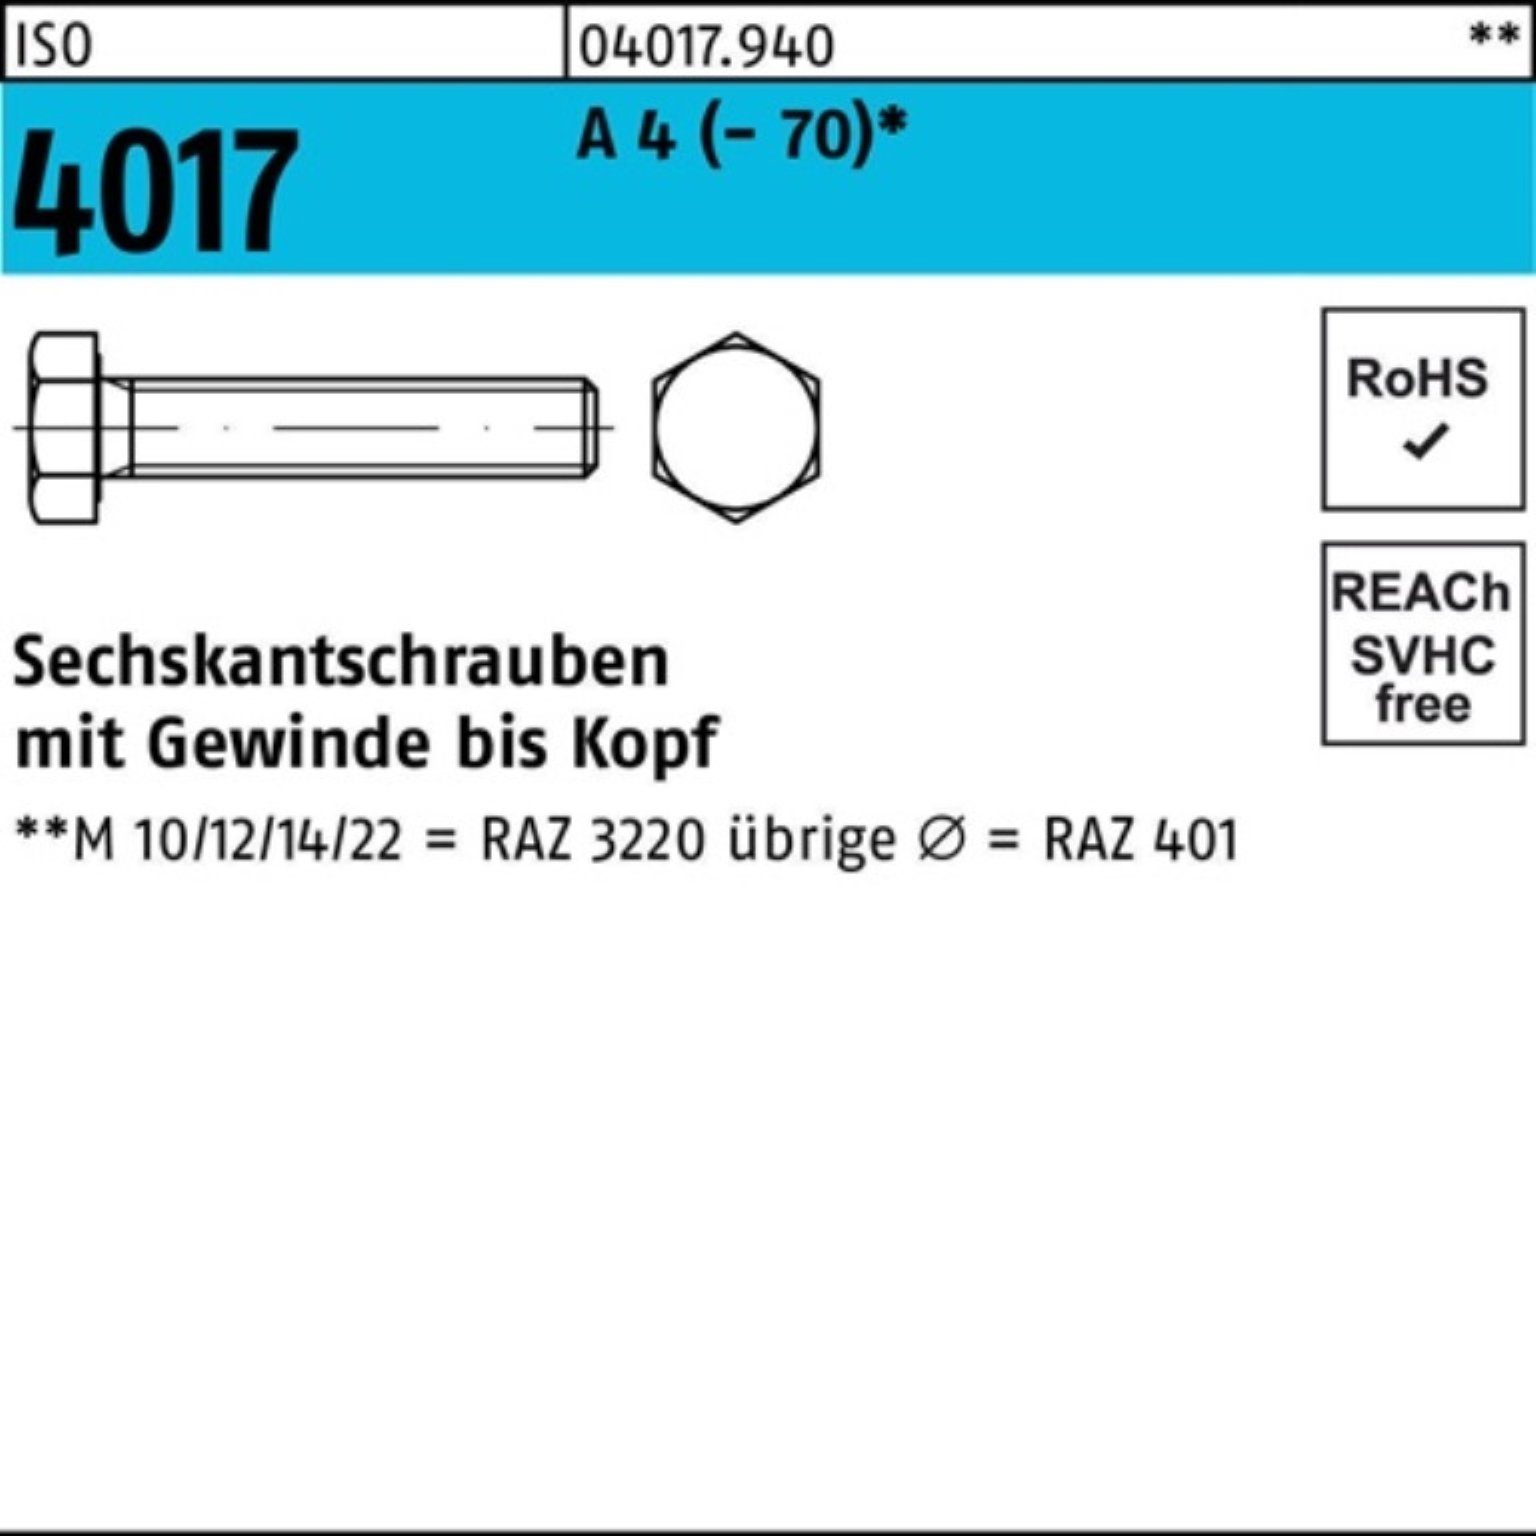 Bufab Sechskantschraube 100er Pack Sechskantschraube ISO 4017 VG M8x 110 A 4 (70) 1 Stück I